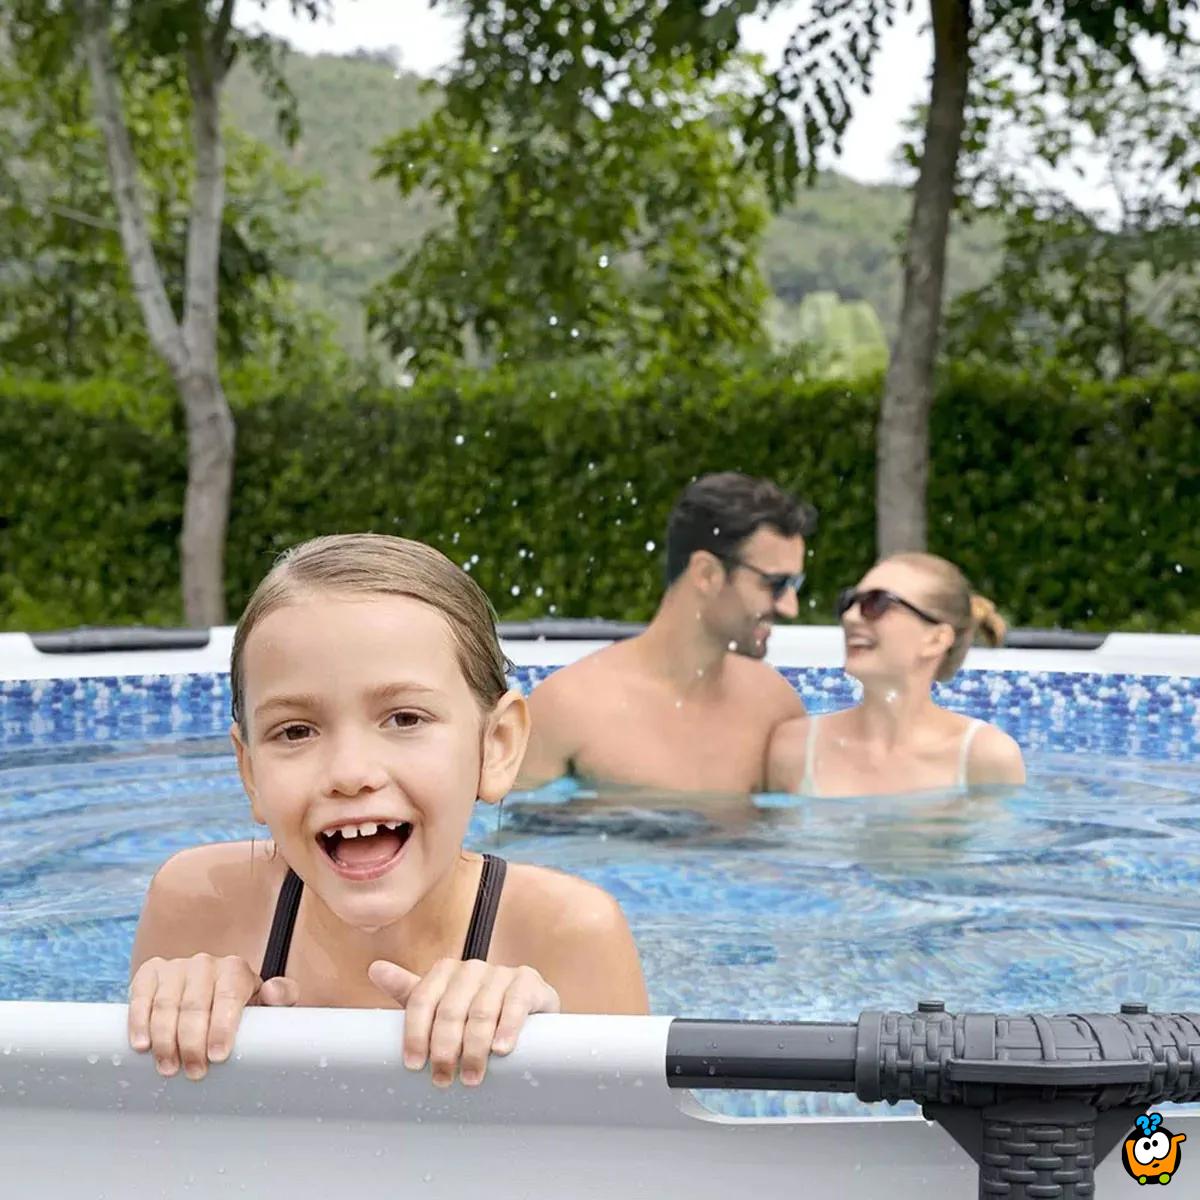 56416 Bestway - Porodični bazen  - 3.66x76cm Steel PRO Max